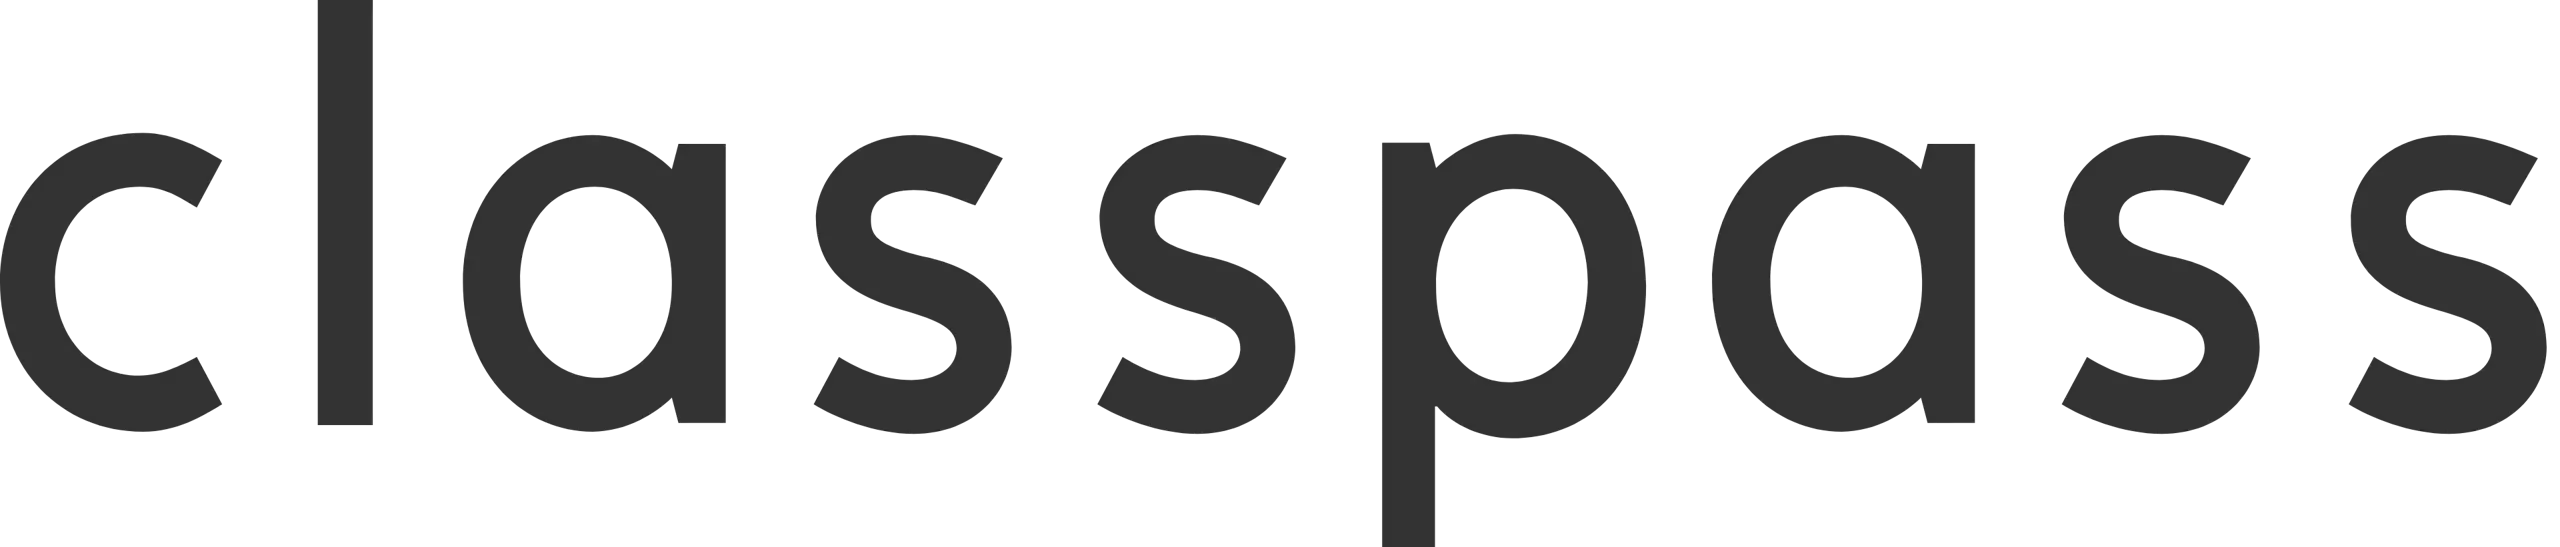 ClassPass logo